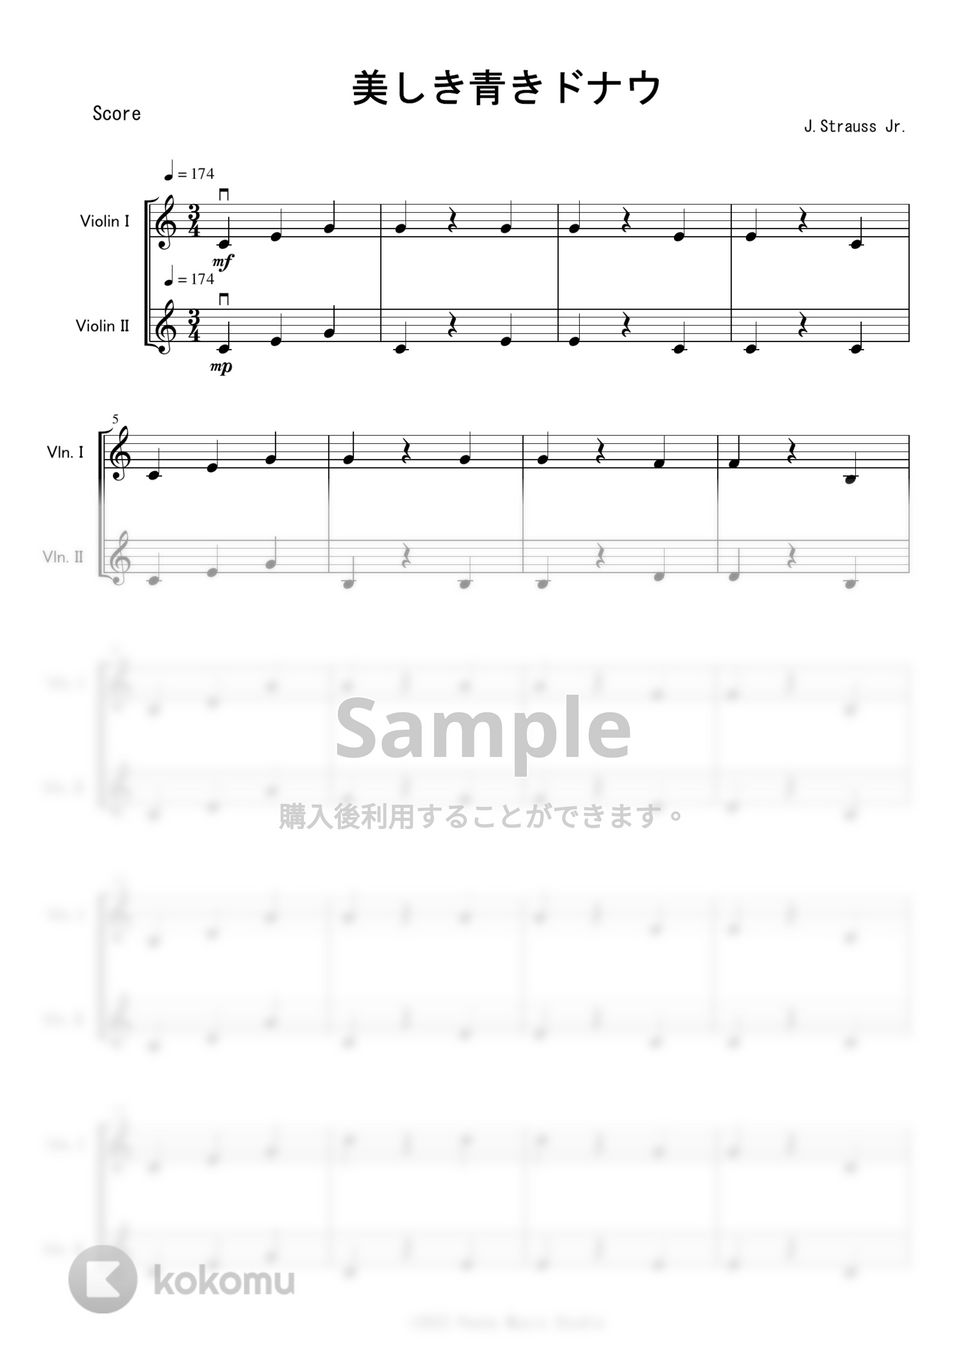 J.シュトラウス二世 - 美しき青きドナウ (ヴァイオリン二重奏) by Peony